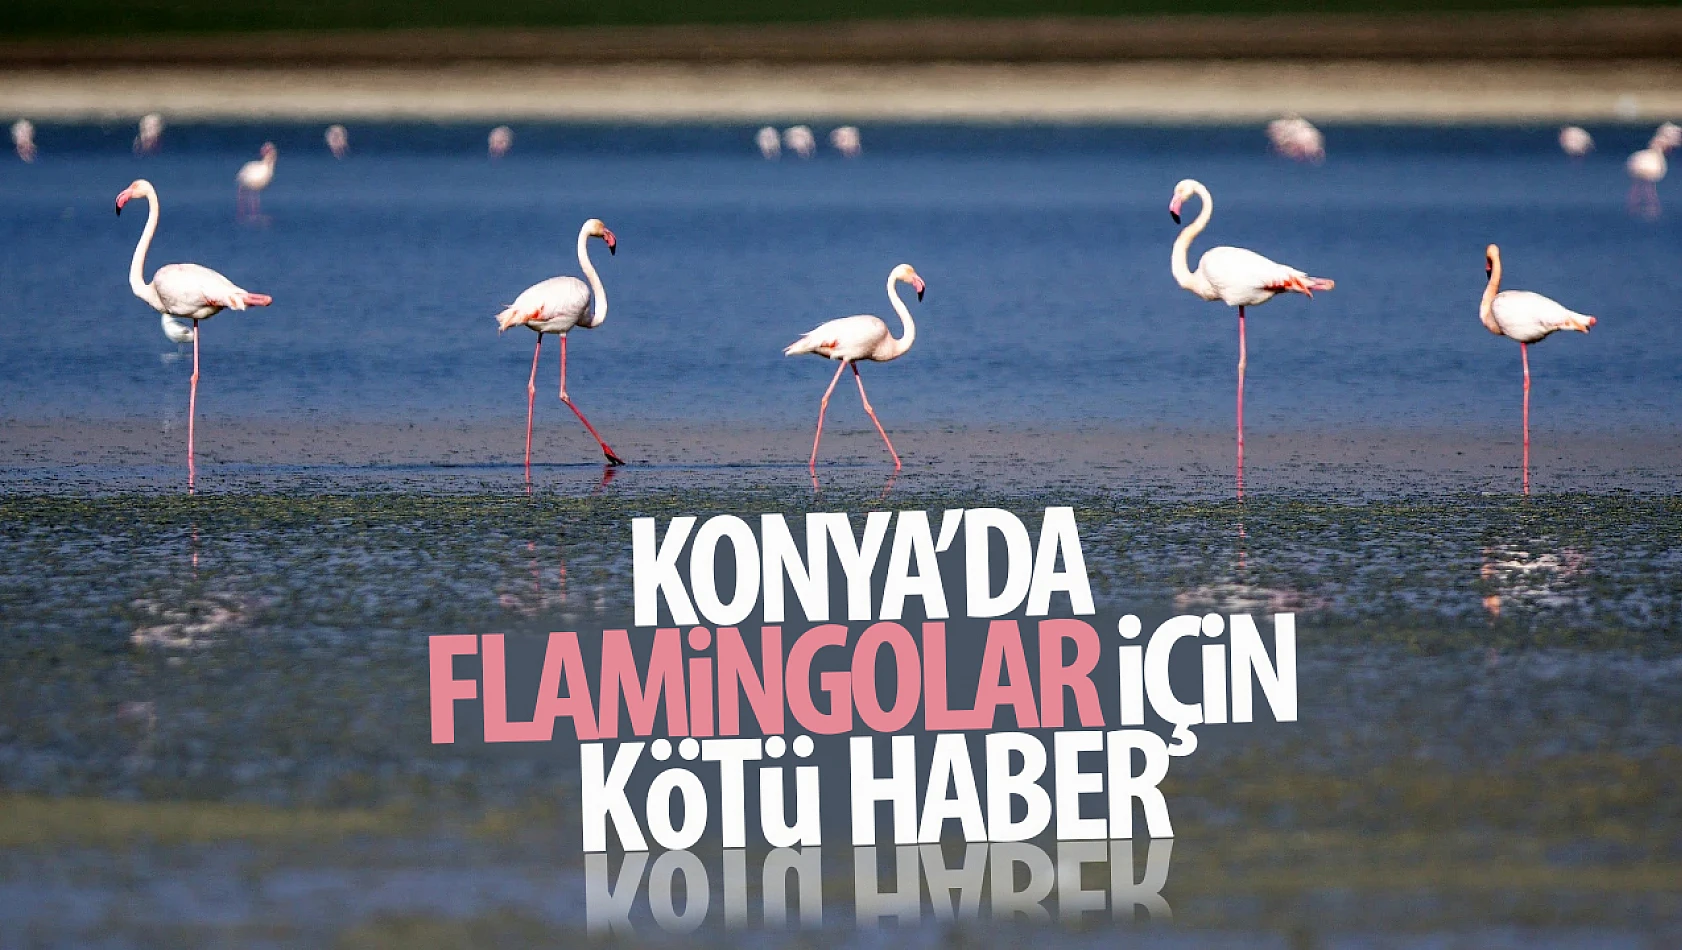 Konya'dan kötü haber geldi! Flamingoların hayatı tehlikede! O gölde su çekildi!